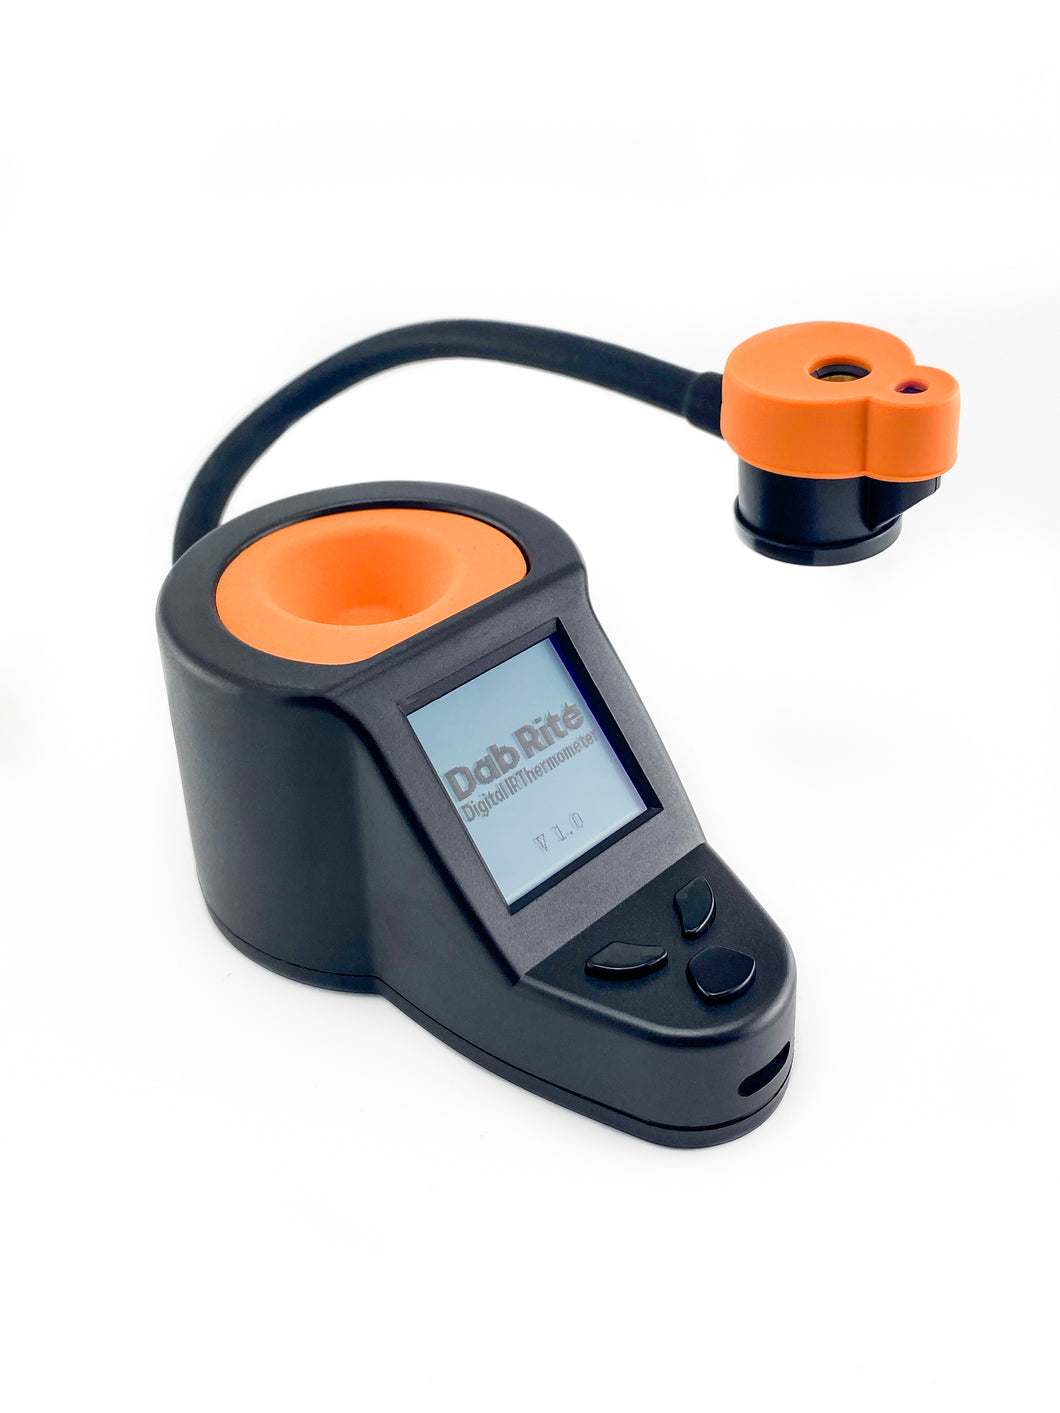 Dab Rite™ Digital IR Thermometer - Orange